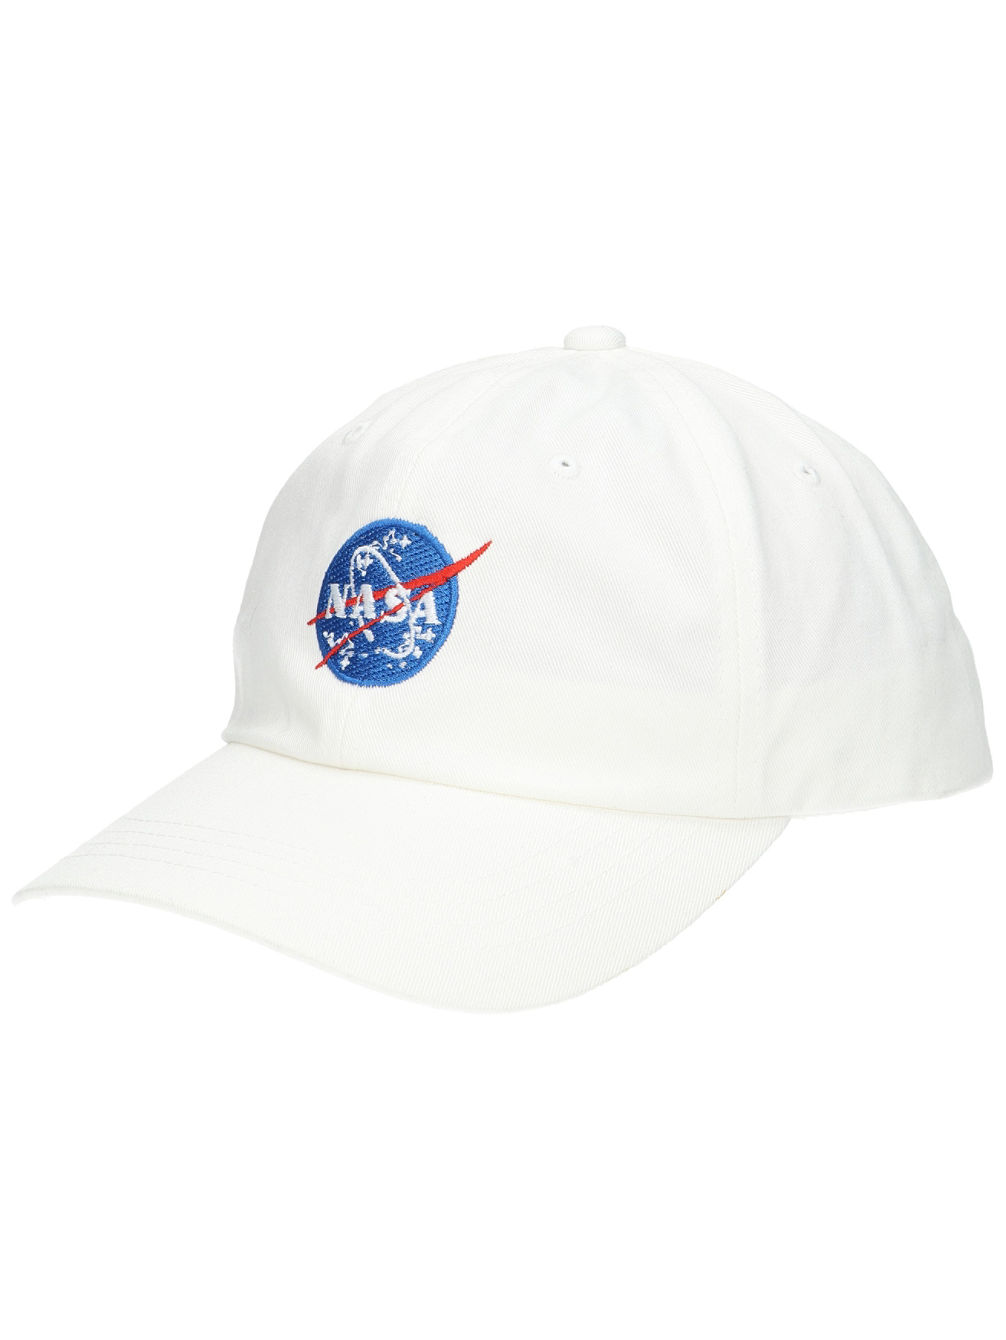 NASA Dad Cappello